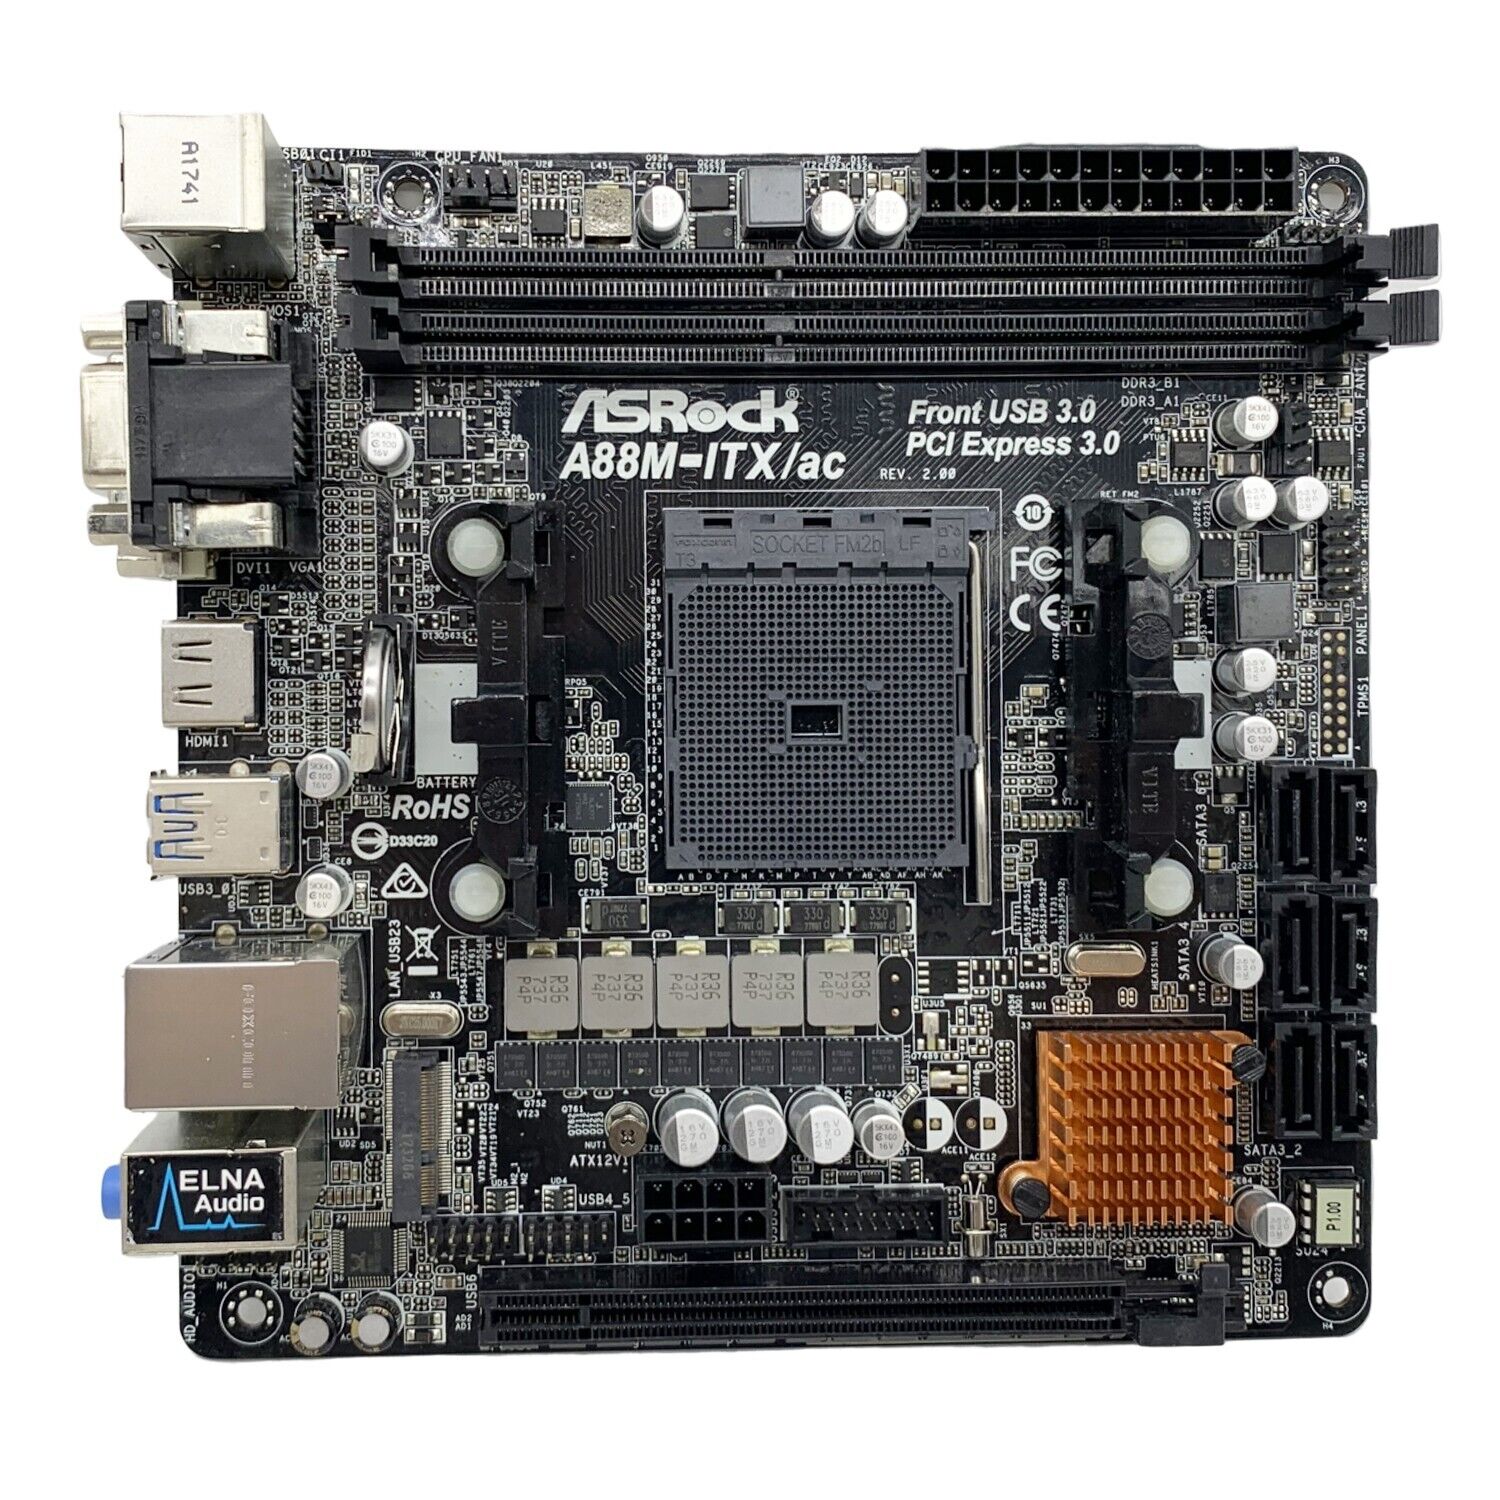 ASRock A88M-ITX/ac Motherboard Mini-ITX AMD A88X FM2+/FM2 DDR3 SATA3 HDMI DVI-D